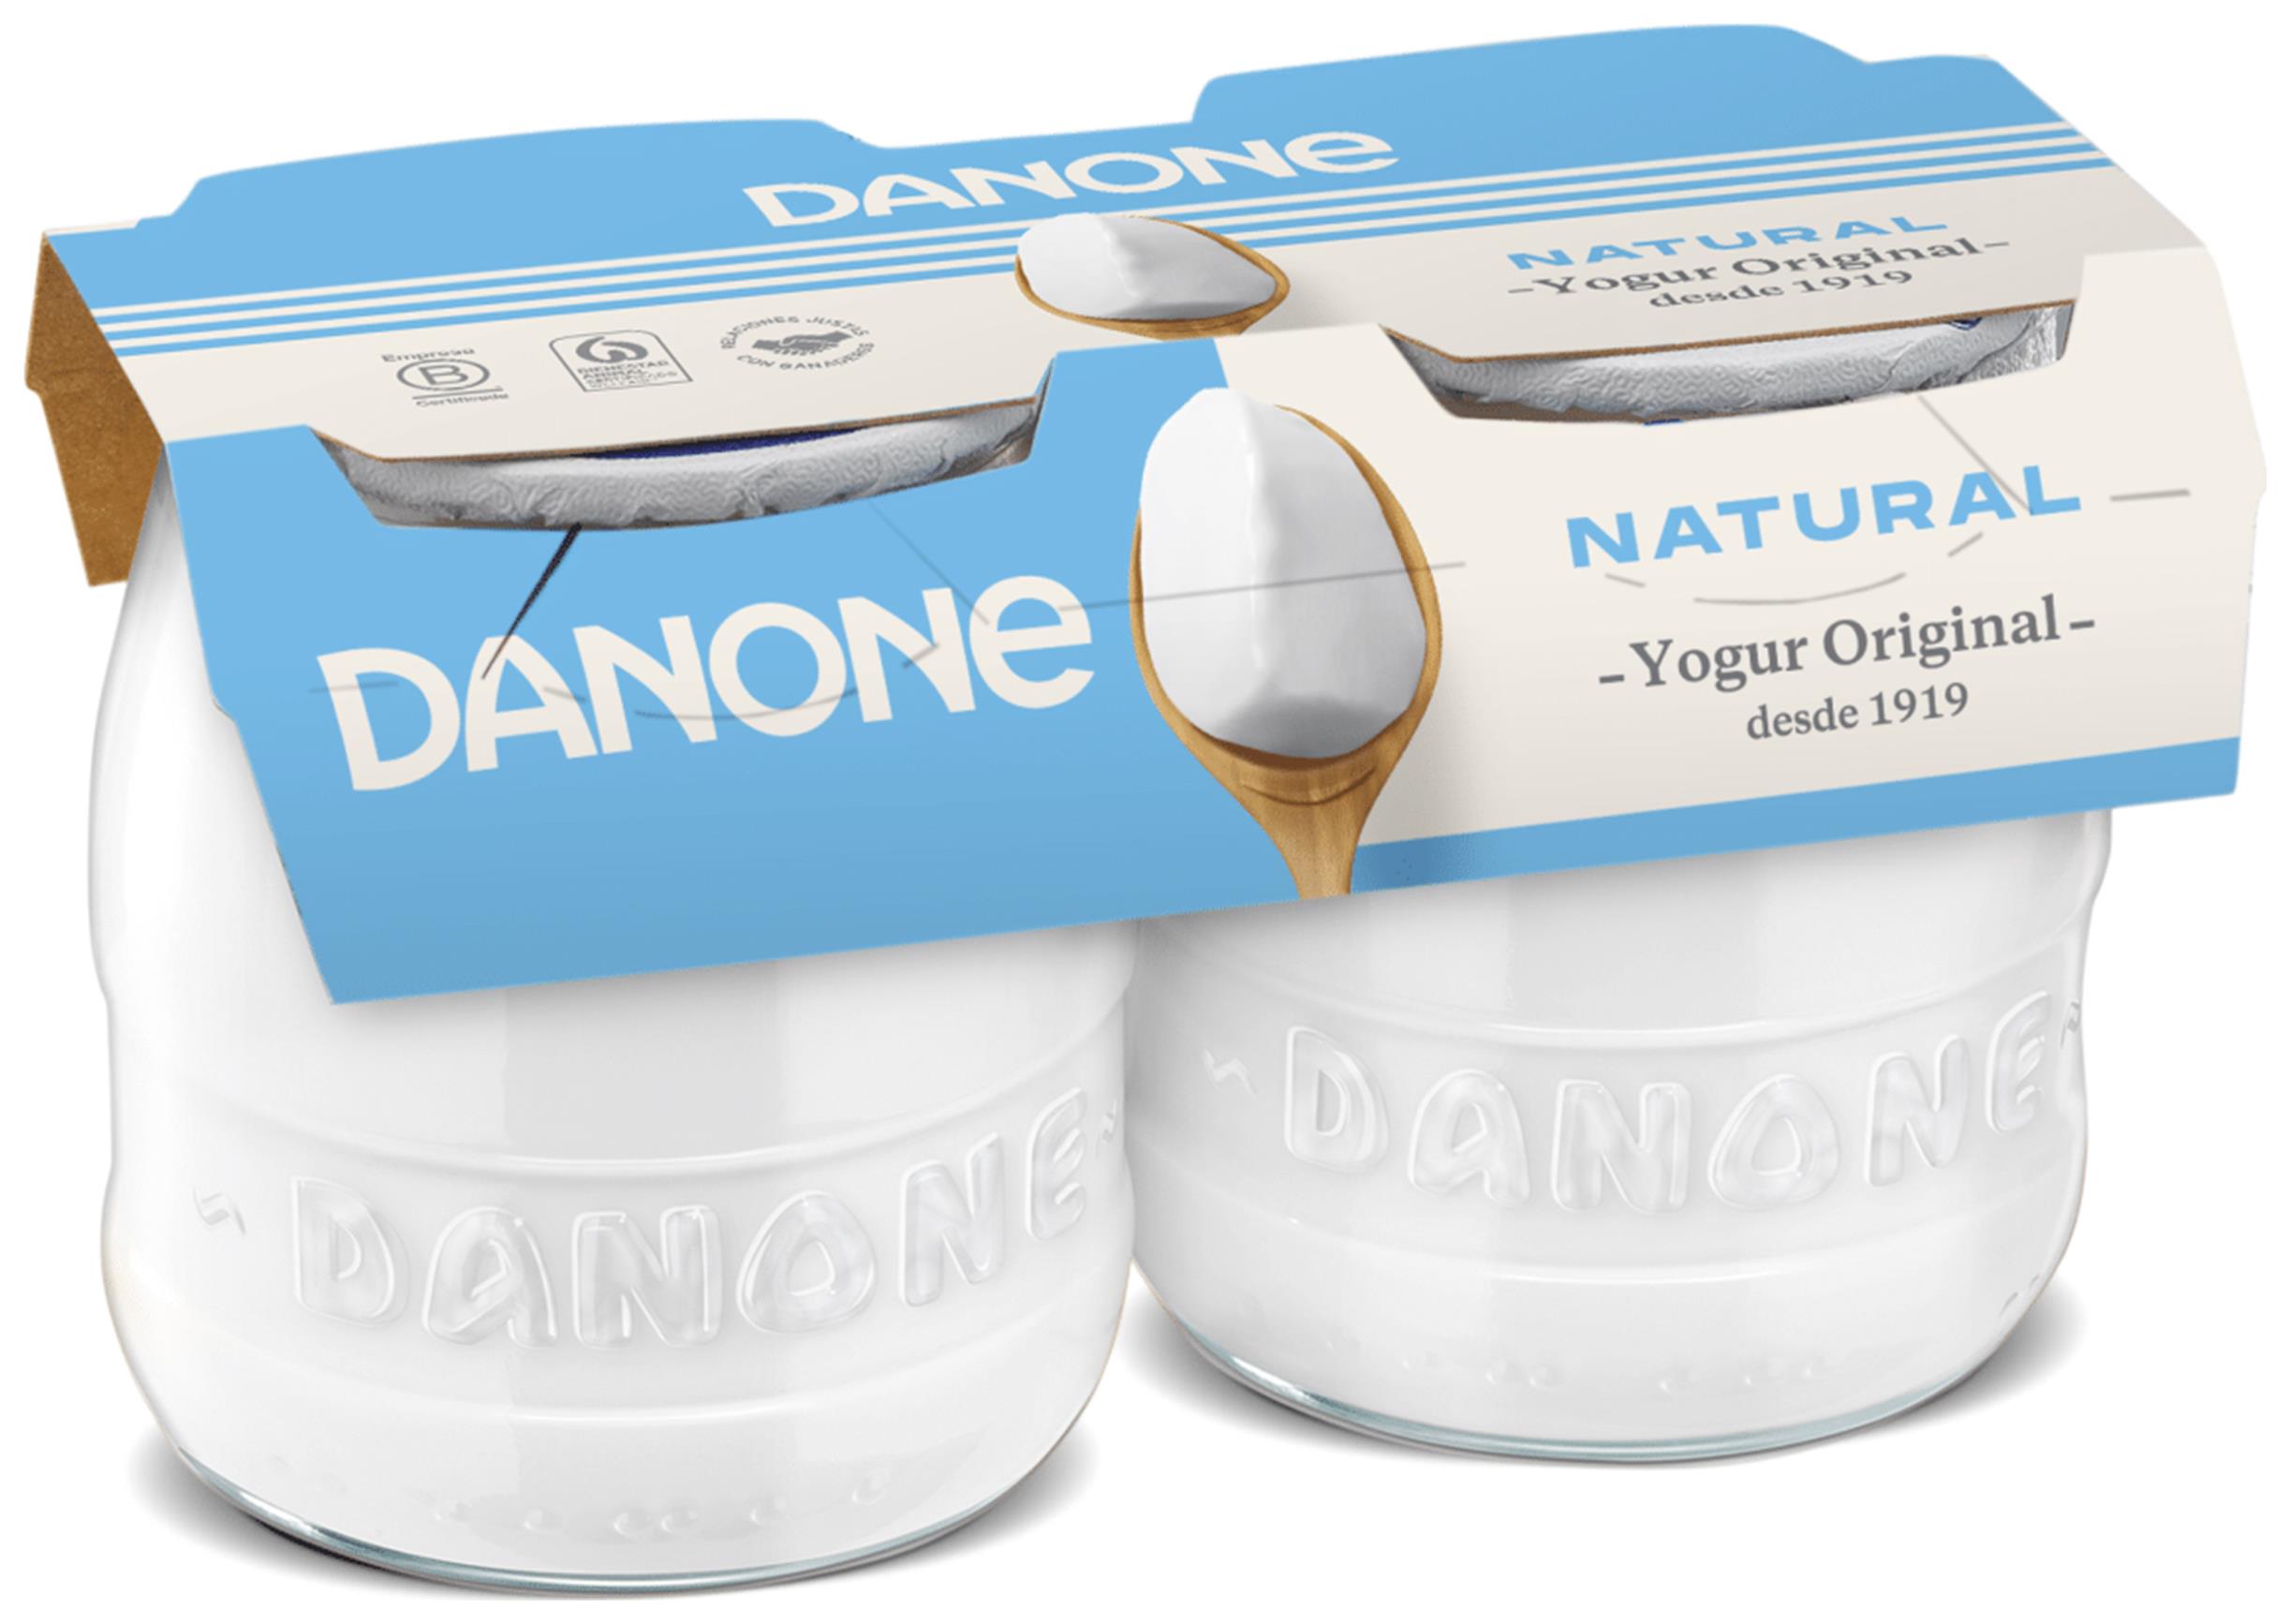 Original Natural - Danone